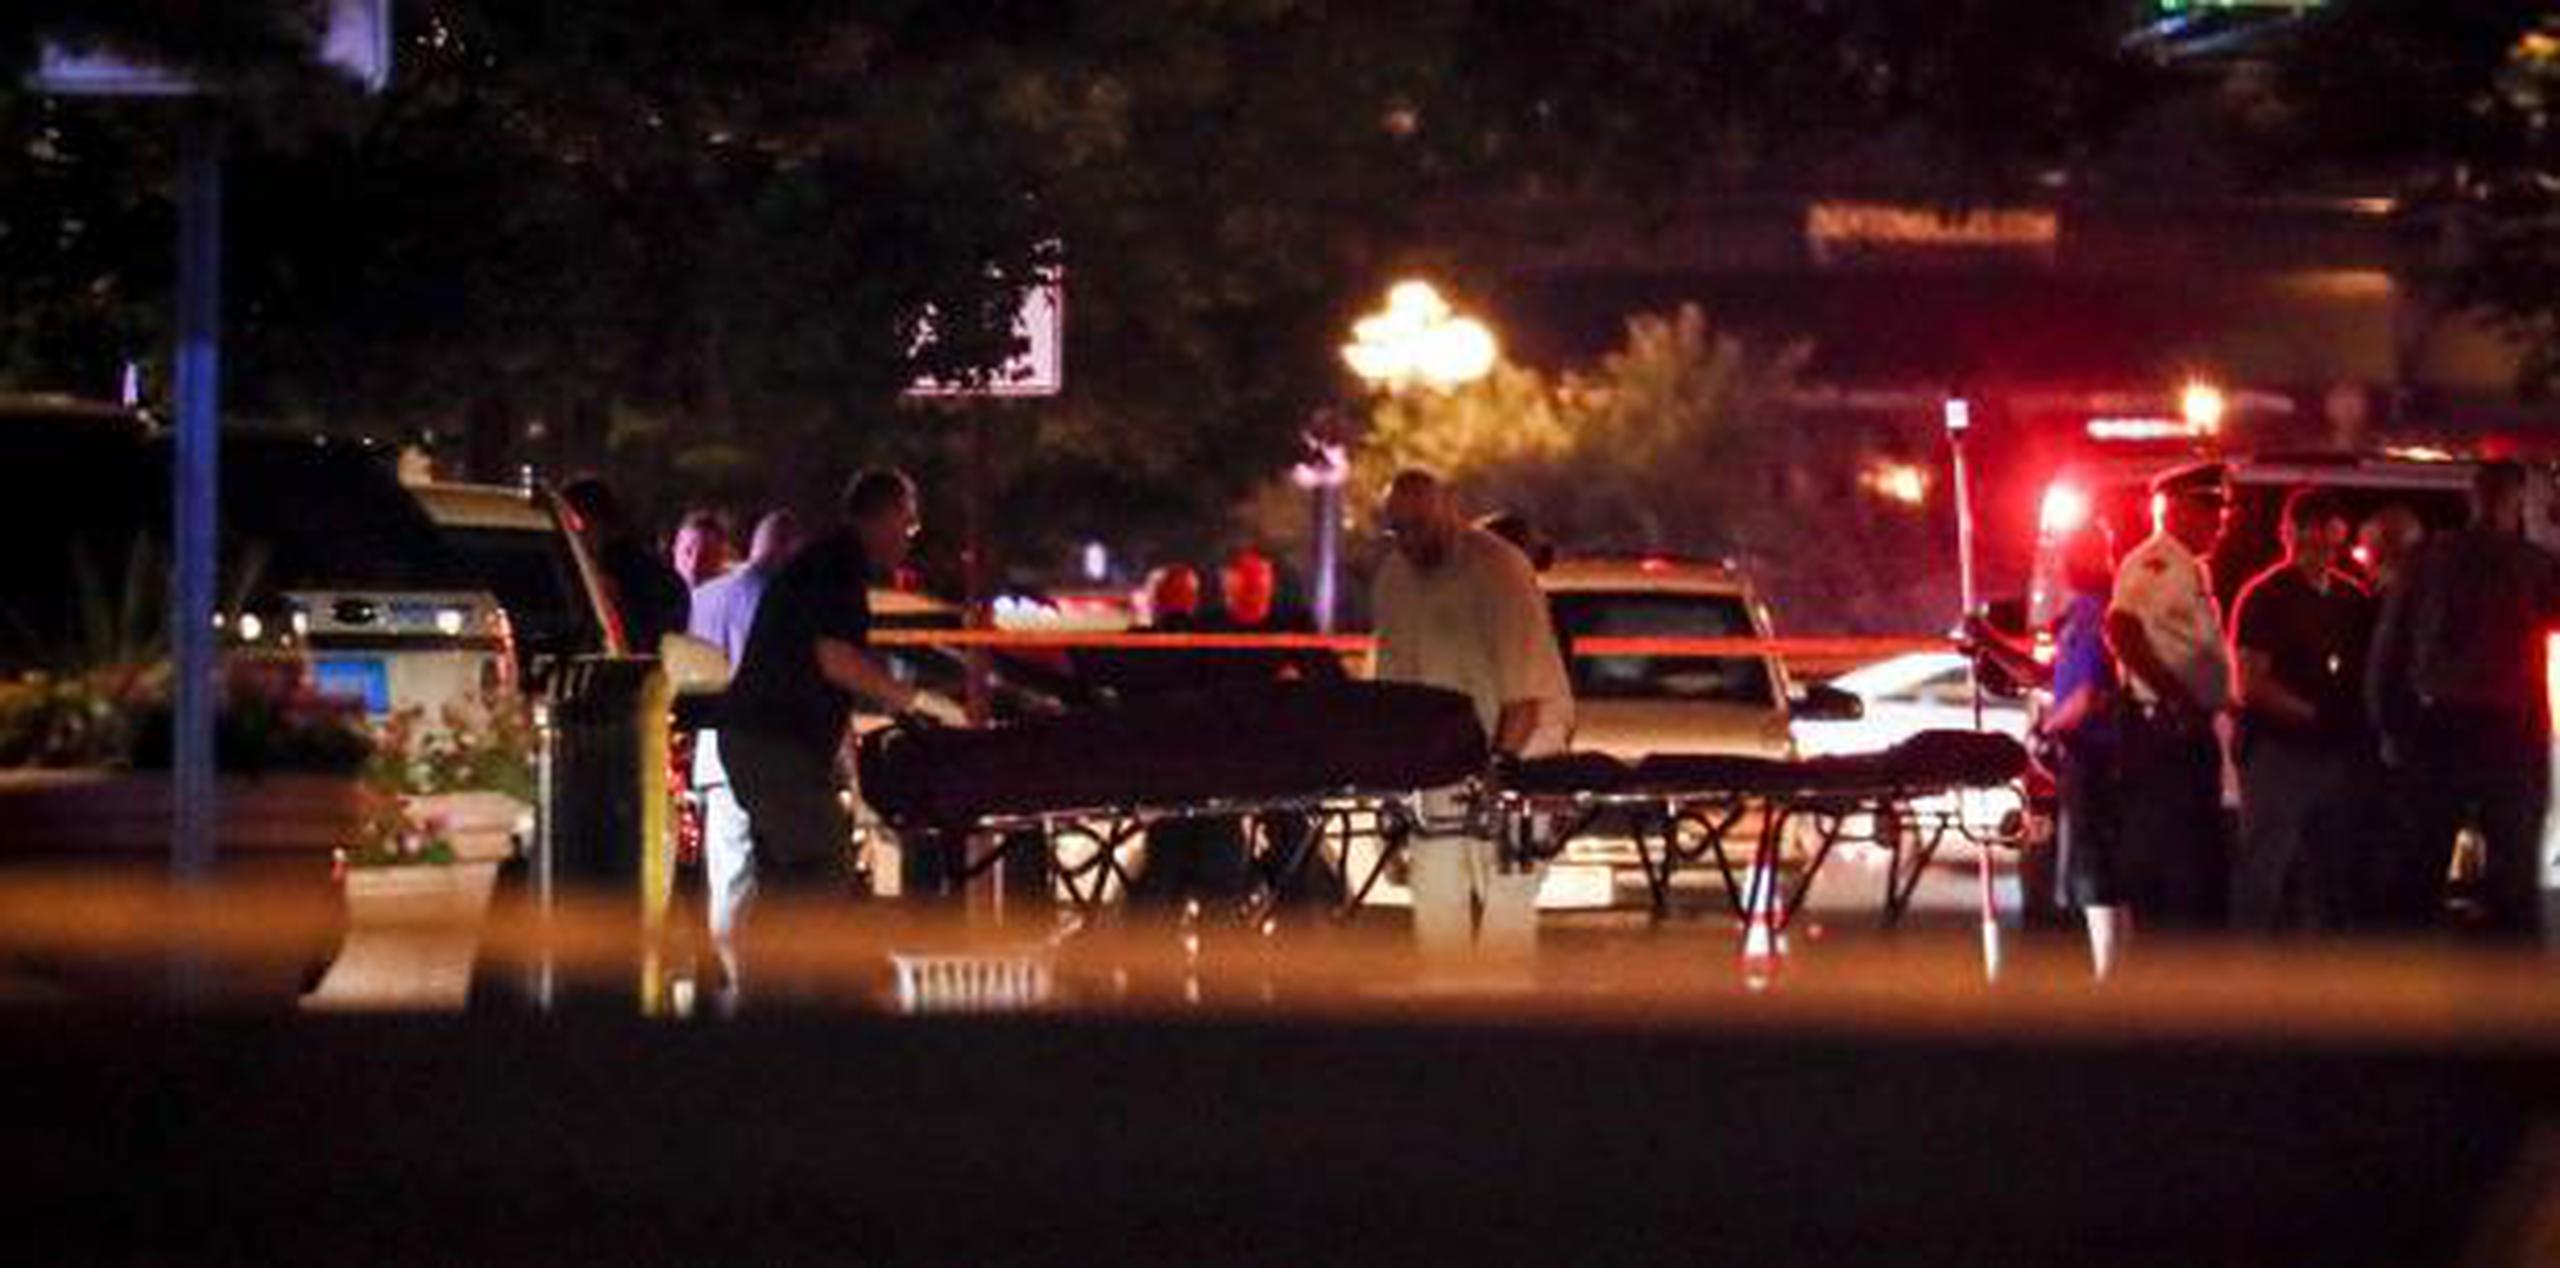 Este nuevo tiroteo se produce sólo horas después de otro en un centro comercial de El Paso (Texas), donde este sábado murieron al menos 20 personas y otras 26 resultaron heridas. (AP)